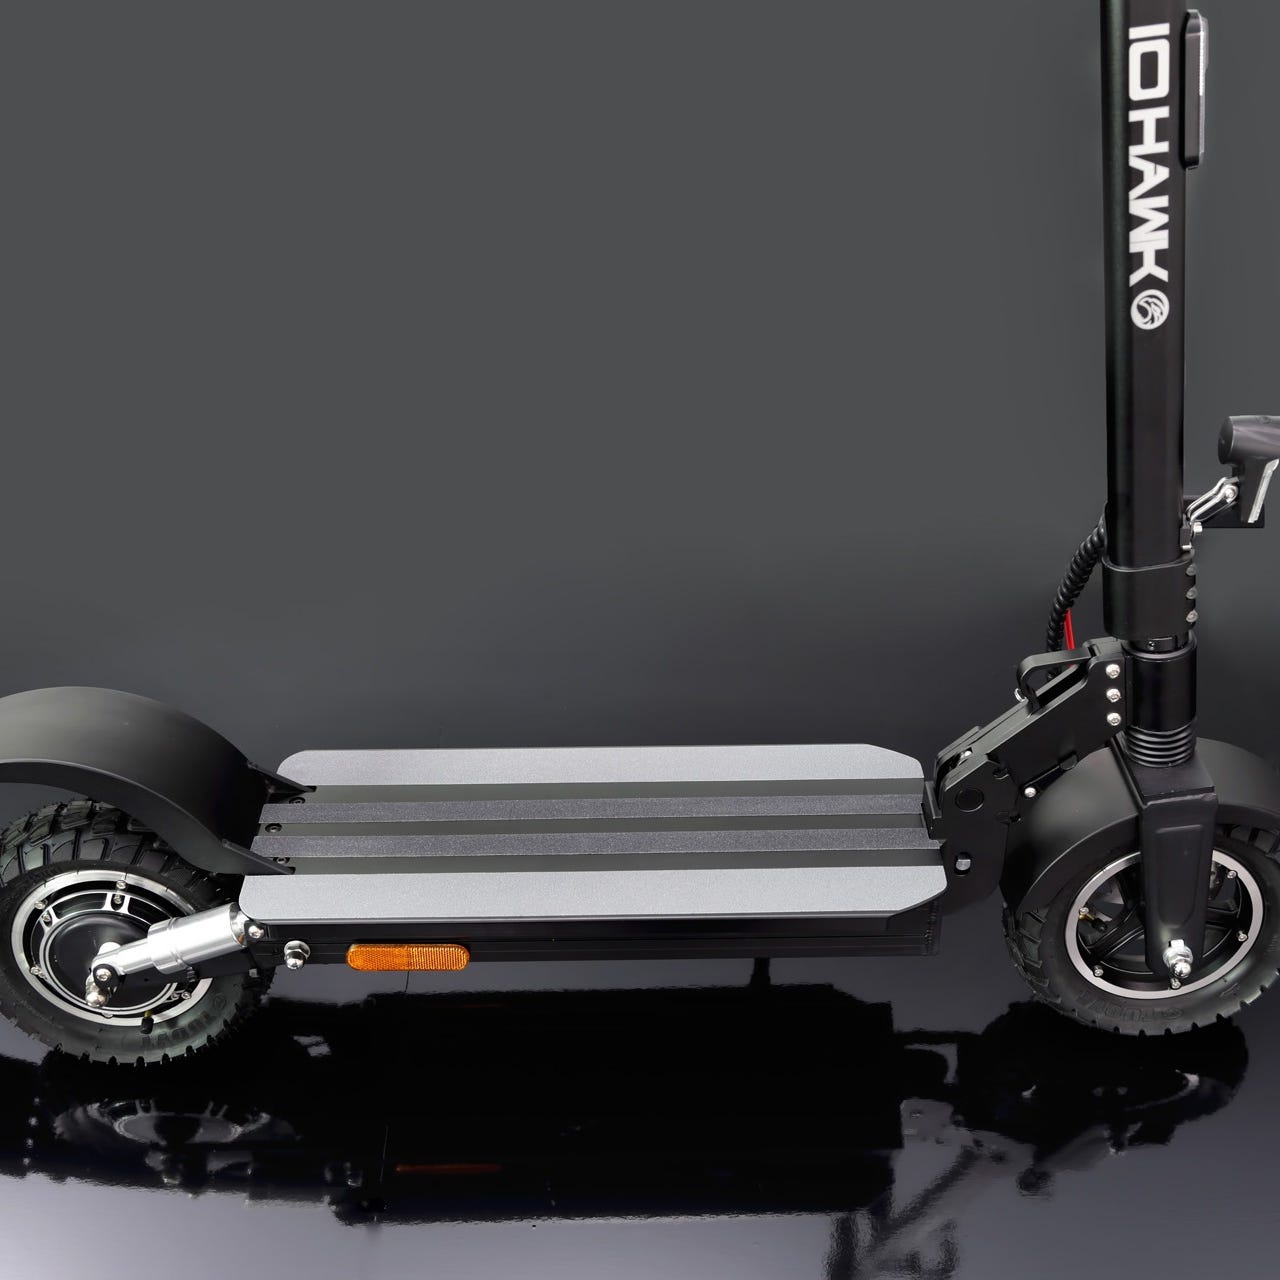 IO HAWK CROSS Entry und Premium - Der strassenzugelassene eScooter | IO HAWK - Hersteller für eScooter Hoverboards und mehr